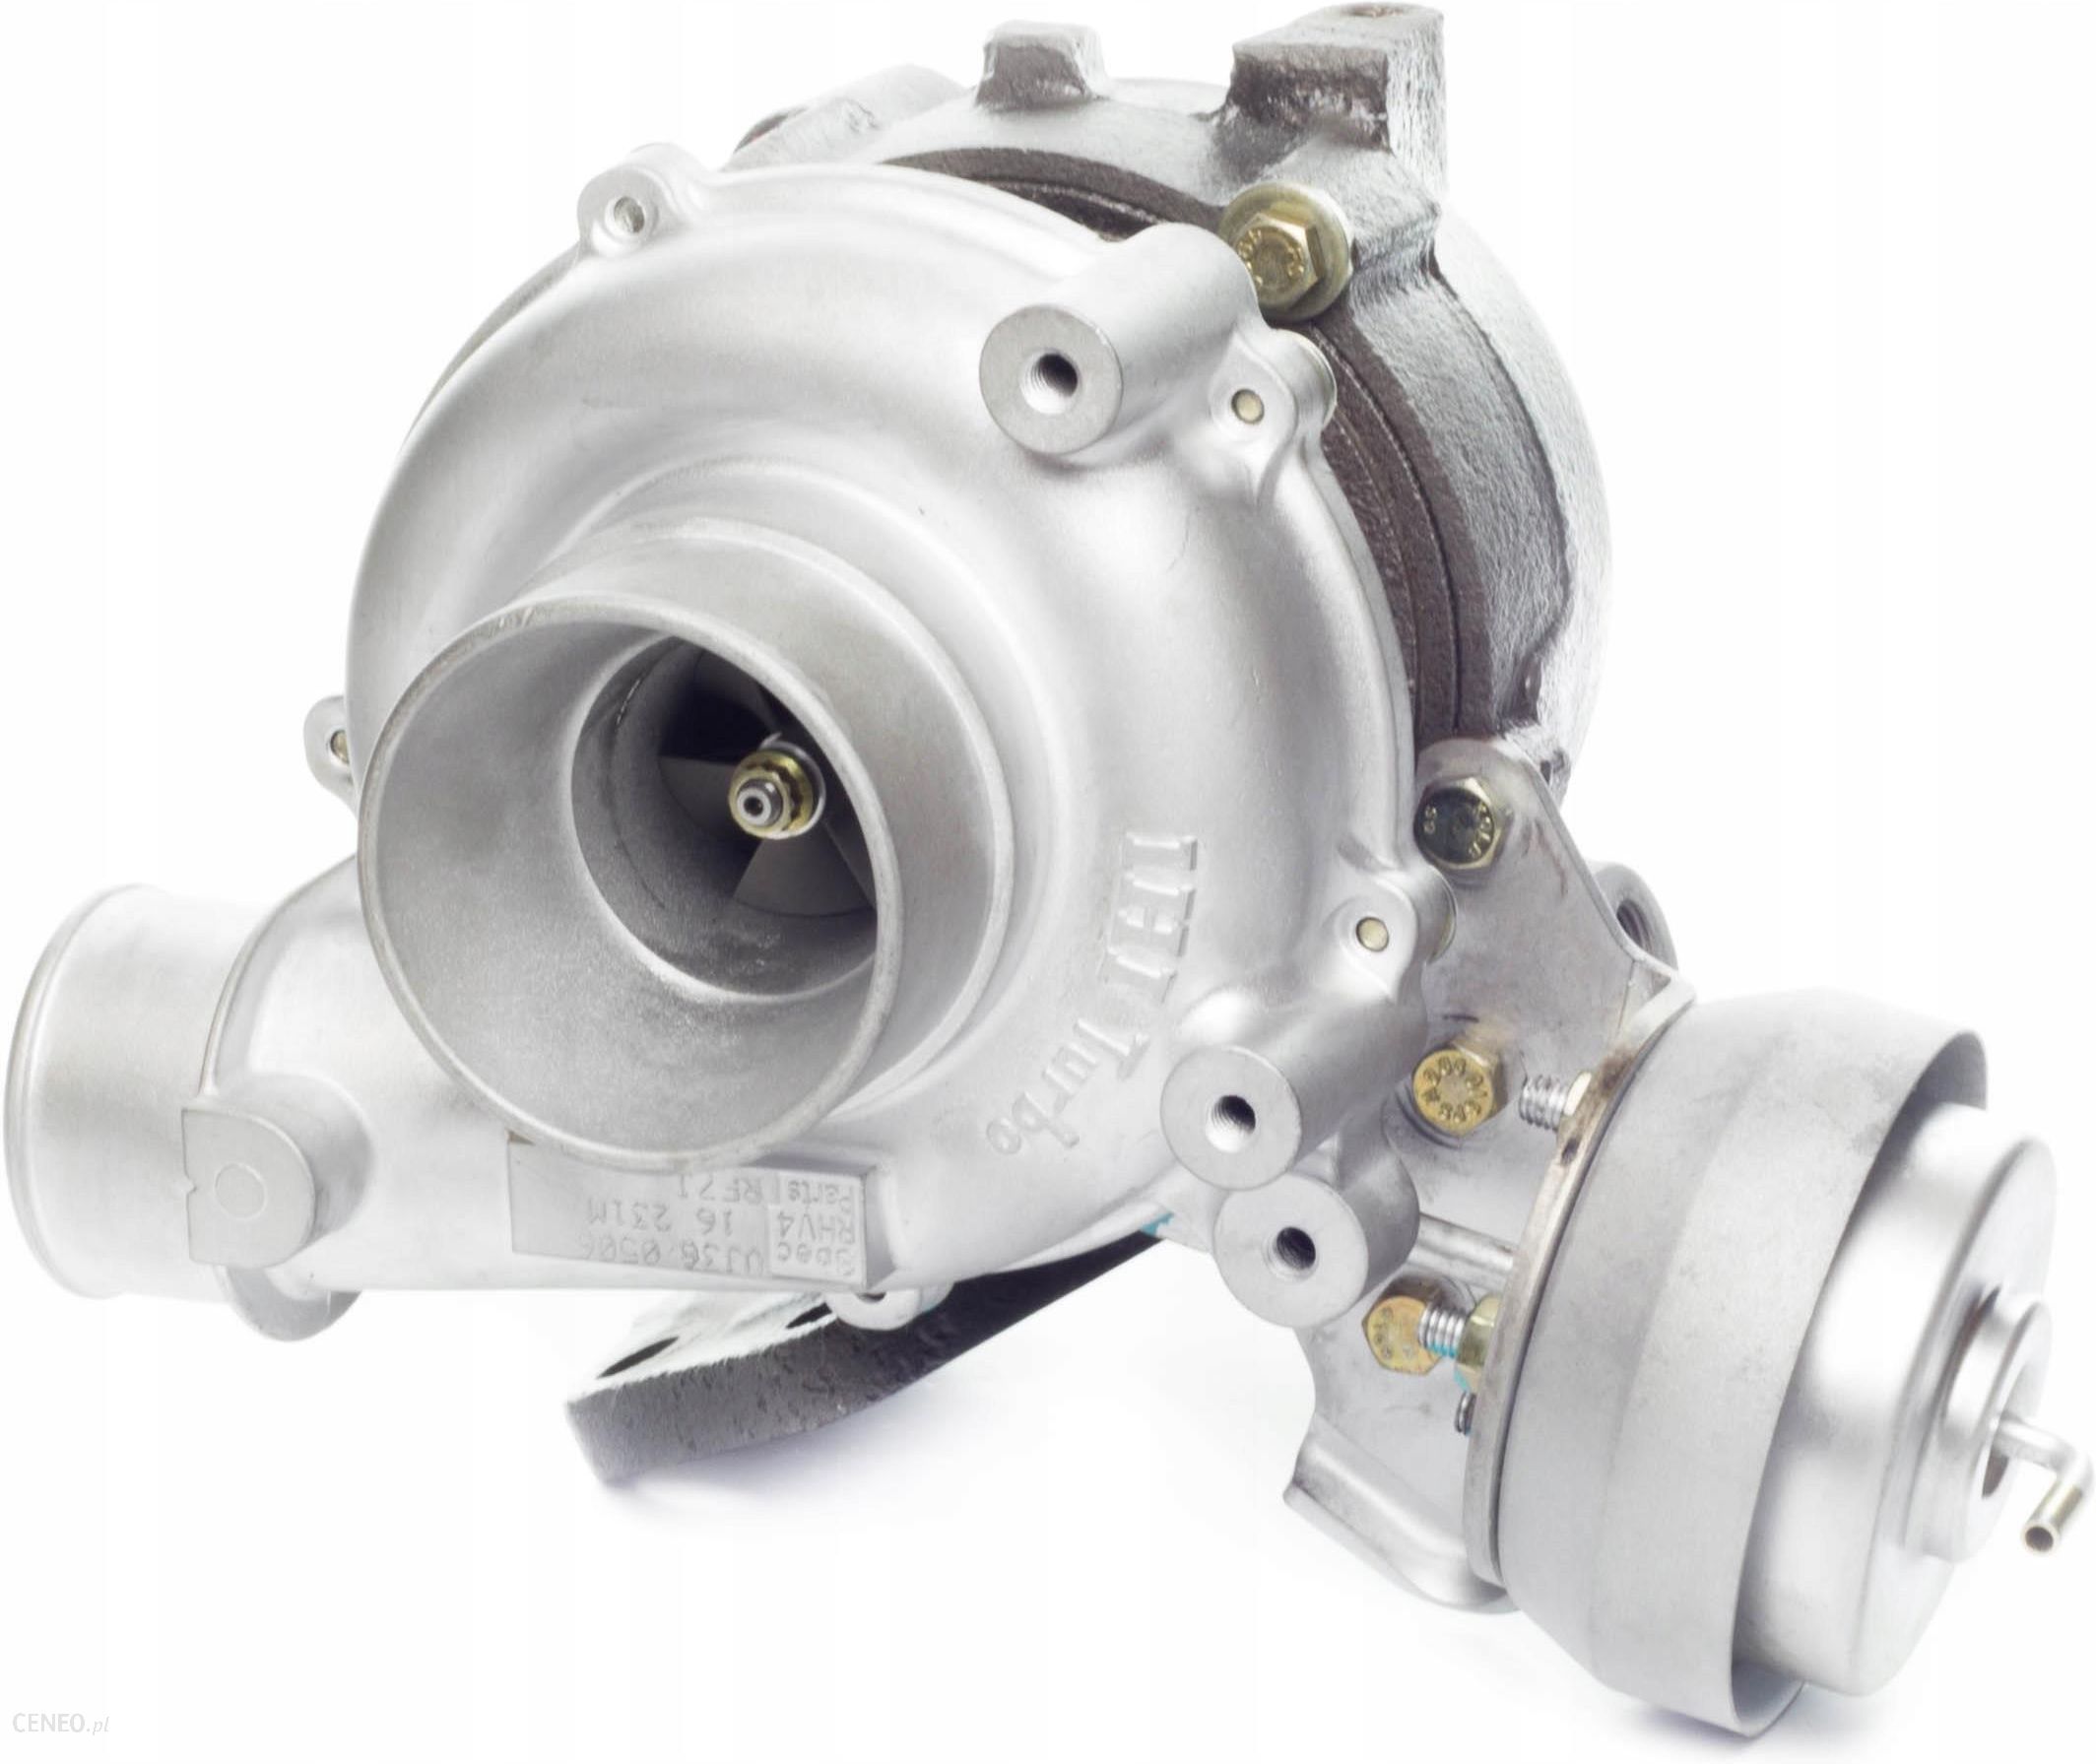 Turbosprężarka Turbina Mazda 3 / 5 / 6 2.0 Cd 141 / 143 Km Vj36 Vj36 - Opinie I Ceny Na Ceneo.pl